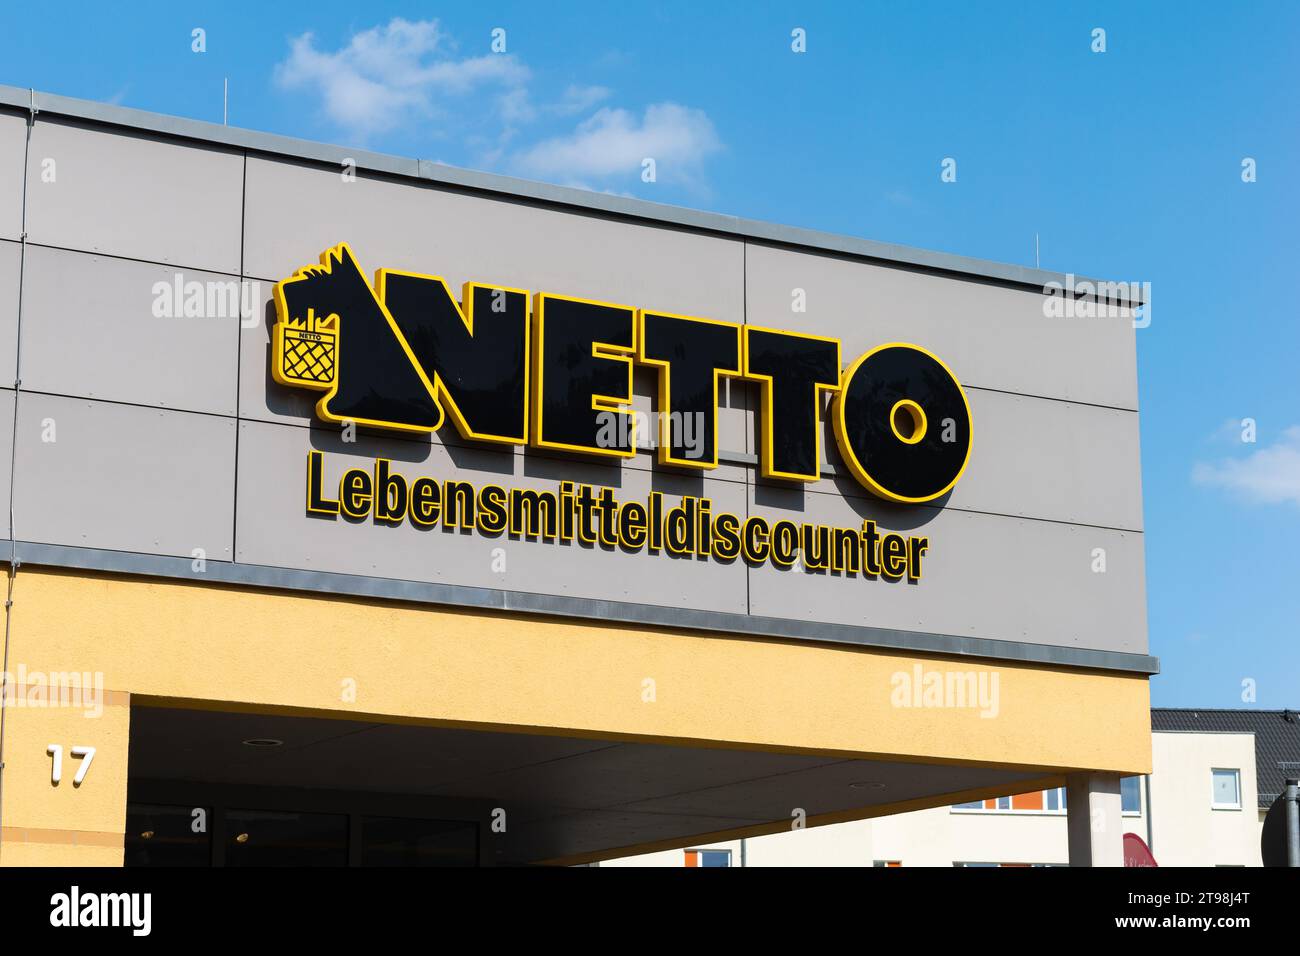 Schild des Netto Lebensmitteldiscounter (Lebensmitteldiscounter) auf einem Gebäude. Das schwarz-gelbe Logo mit dem Hund ist an der Wand. Werbung für Lebensmittelgeschäfte. Stockfoto